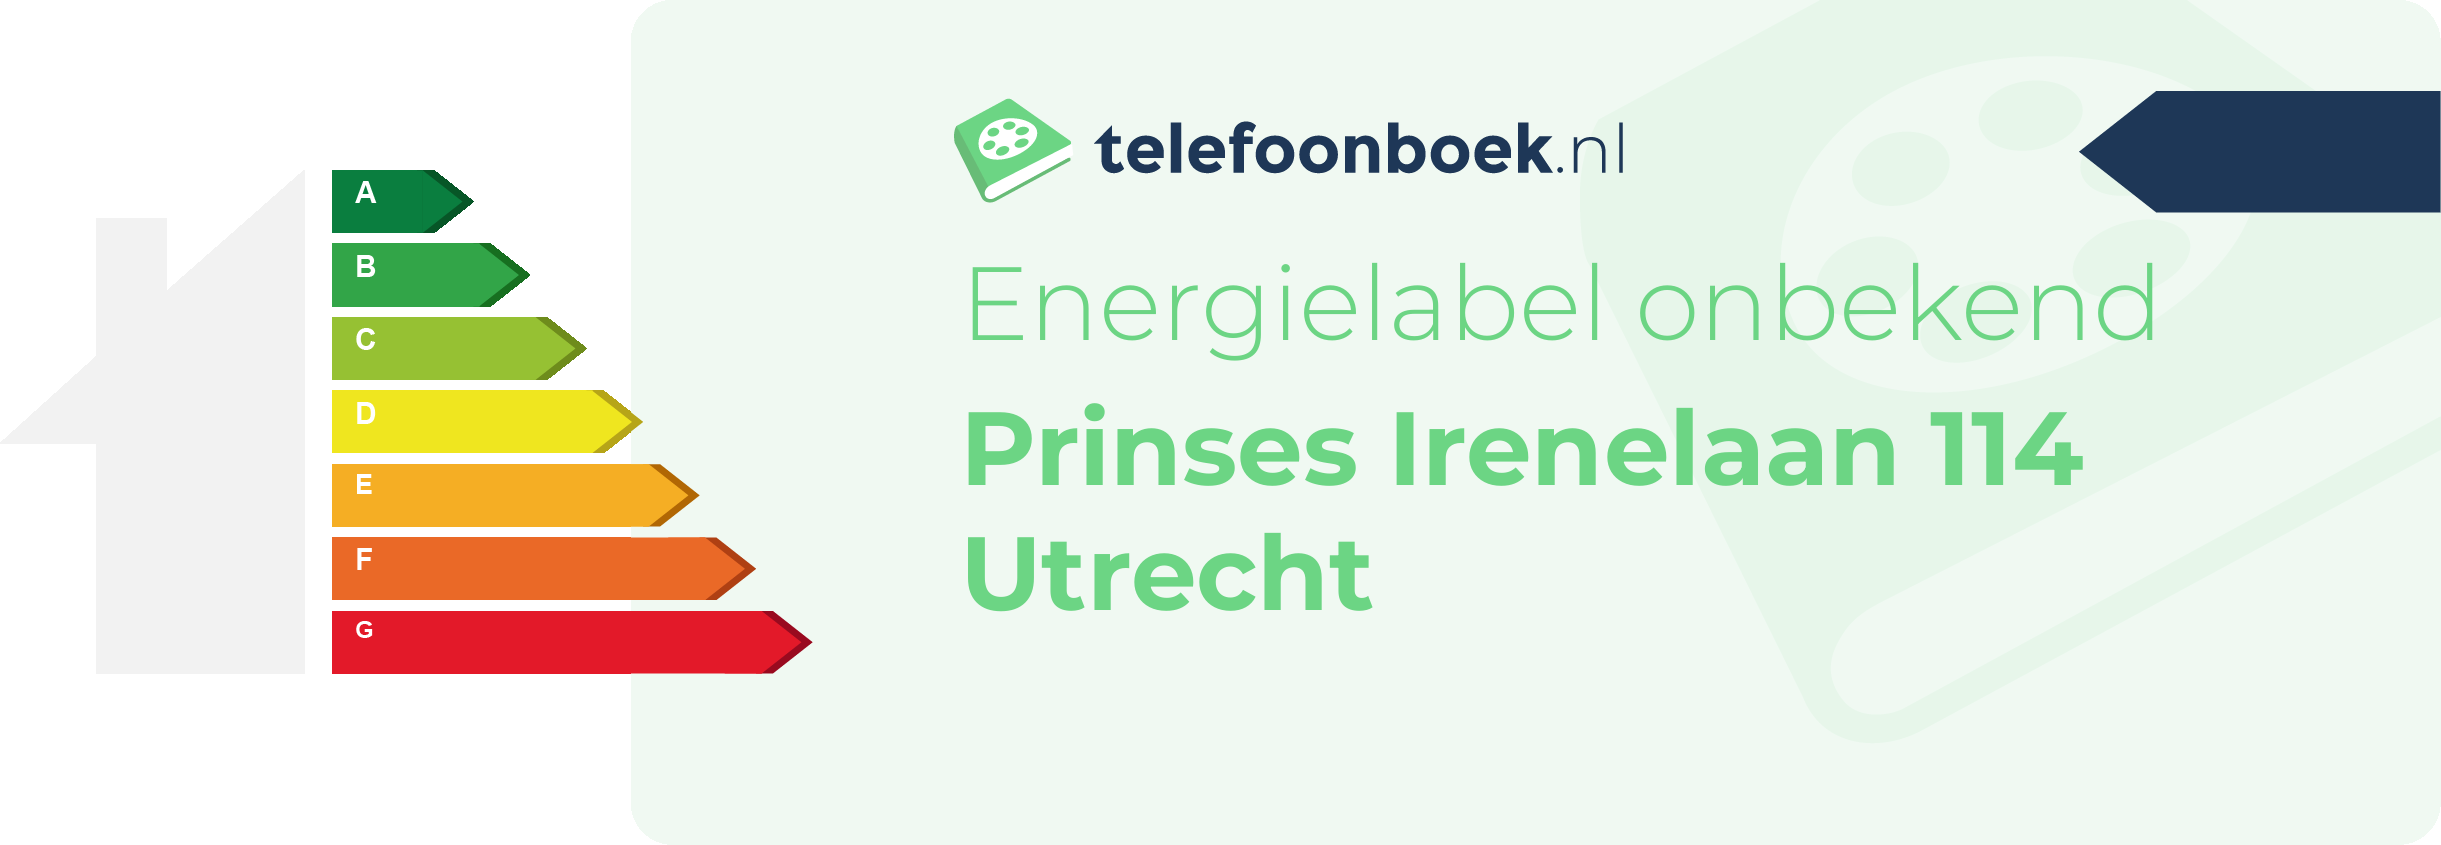 Energielabel Prinses Irenelaan 114 Utrecht